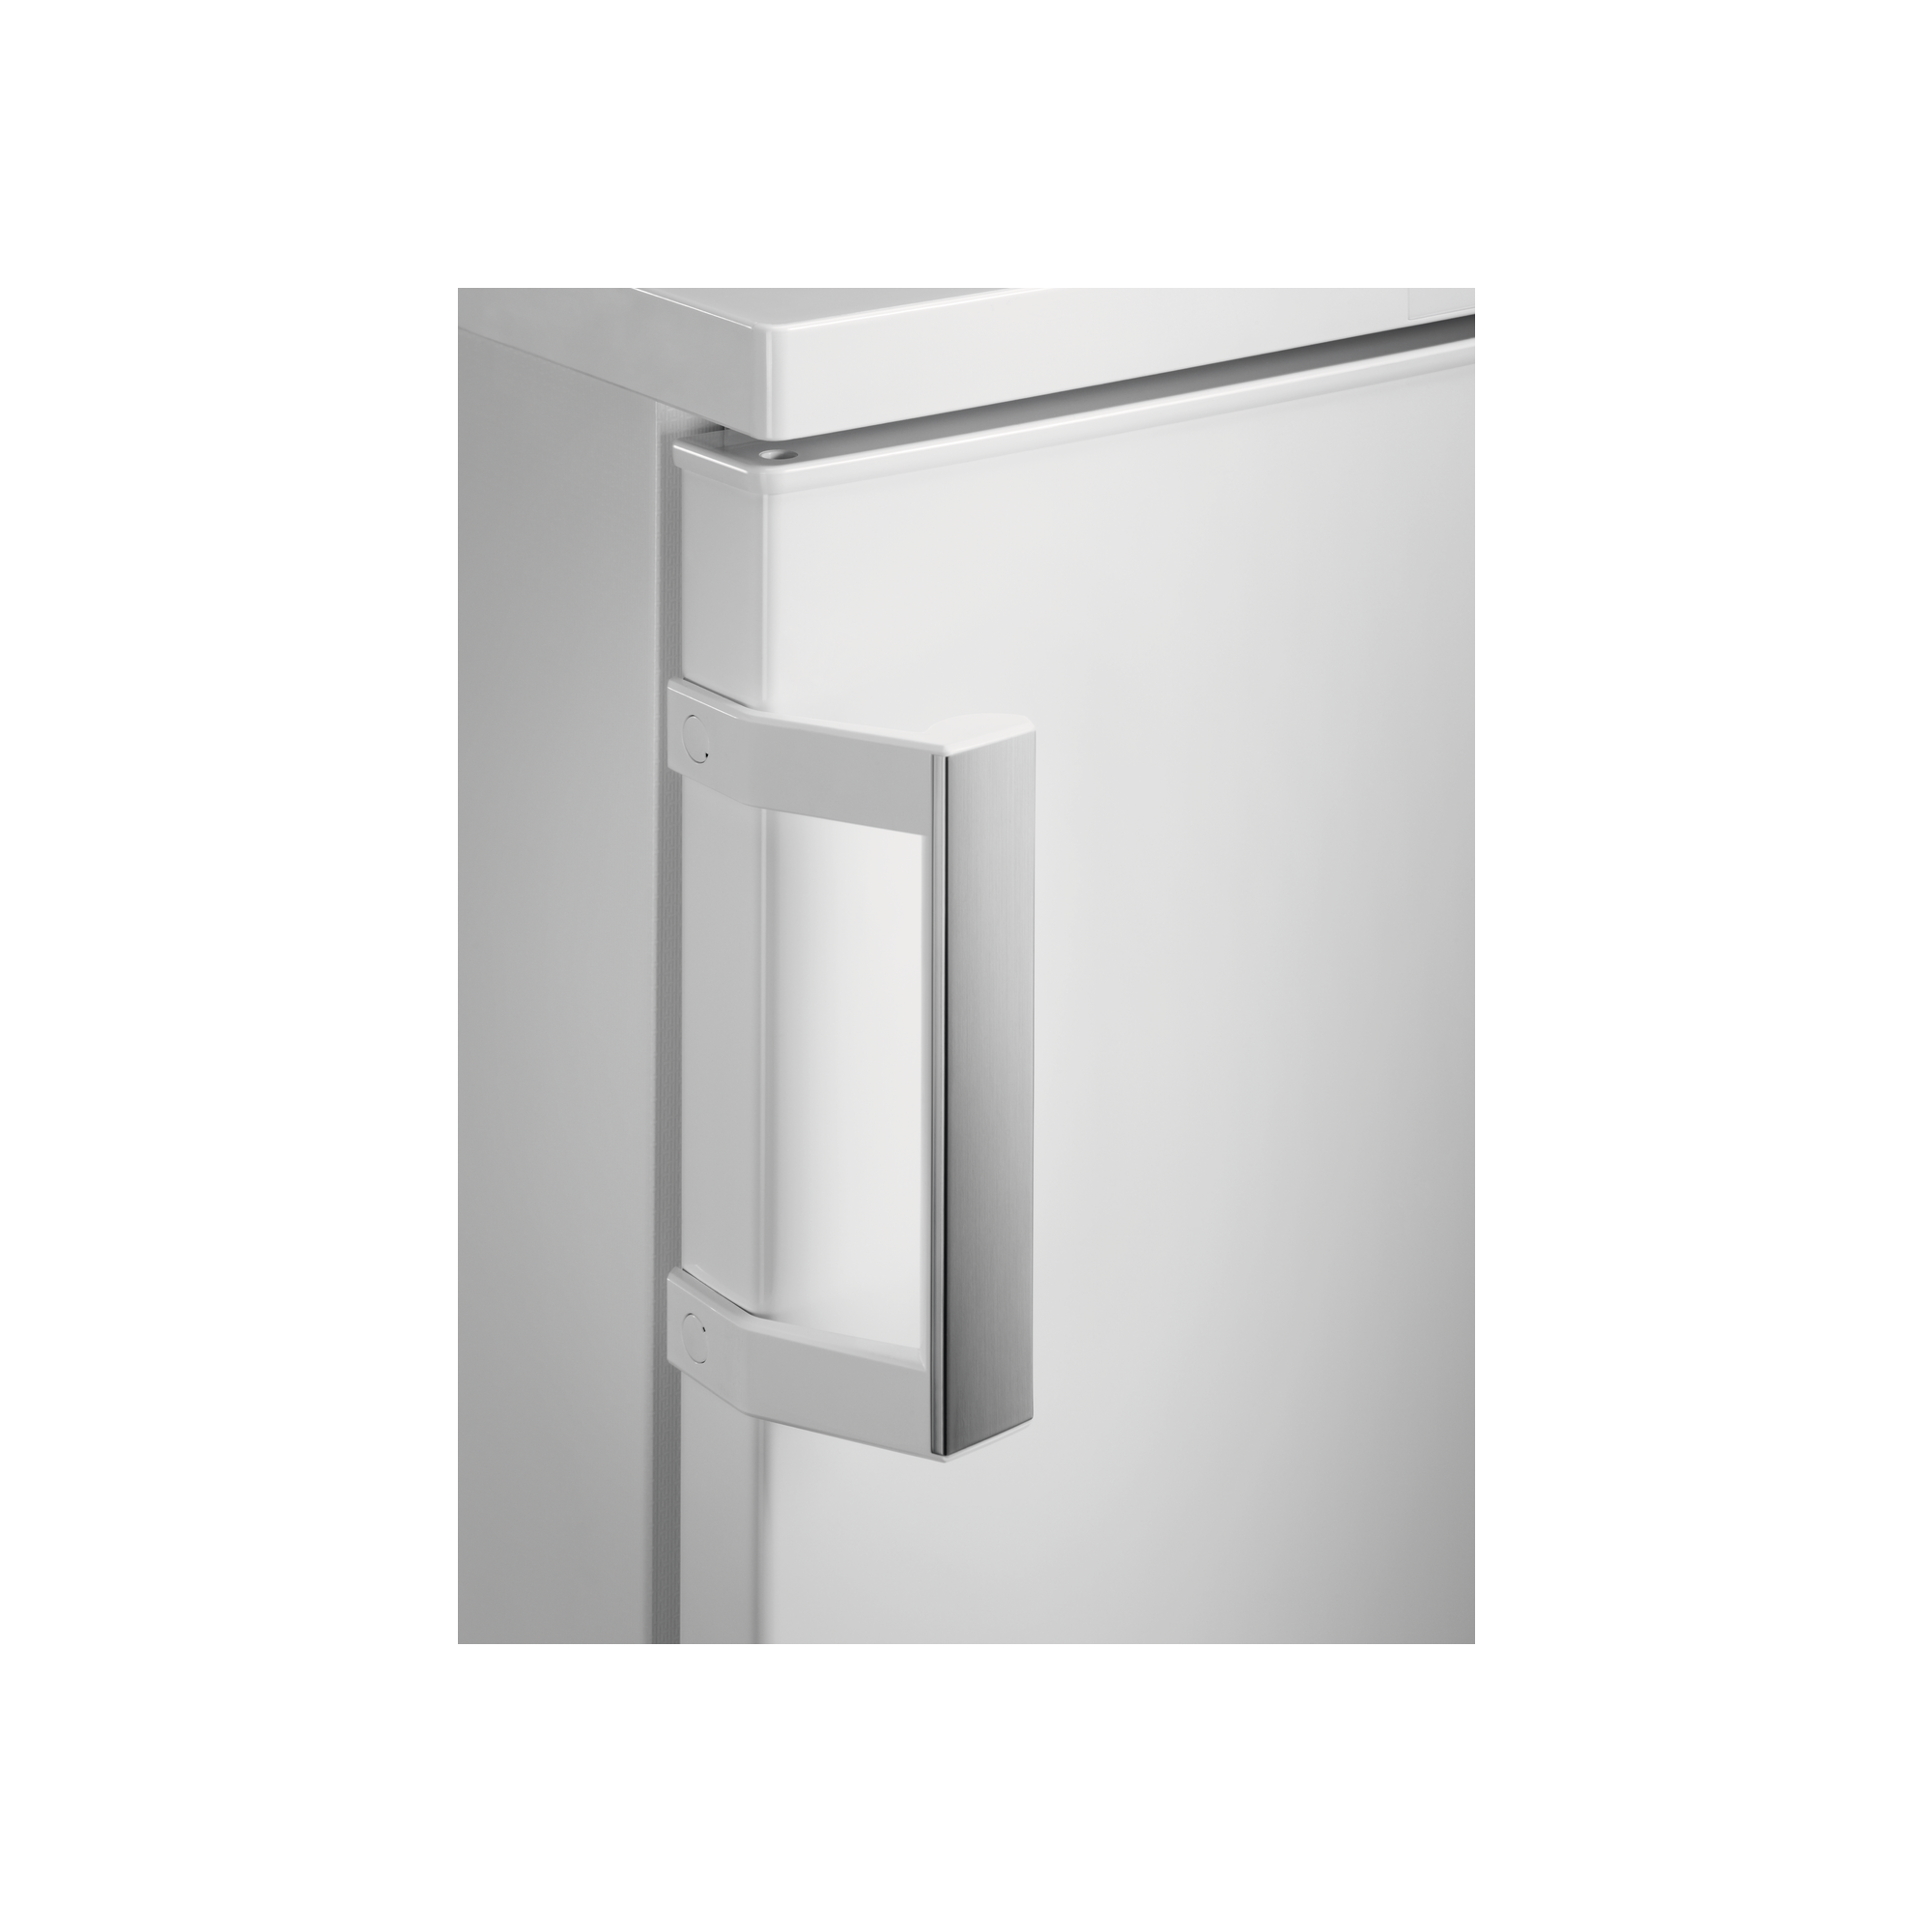 130 mm Weiß 4-Sterne-Gefrierfach (E, 845 / / L Freistehender Tisch-Kühlschrank AEG Weiß) Tisch-Kühlschrank / Freistehender cm hoch, 84,5